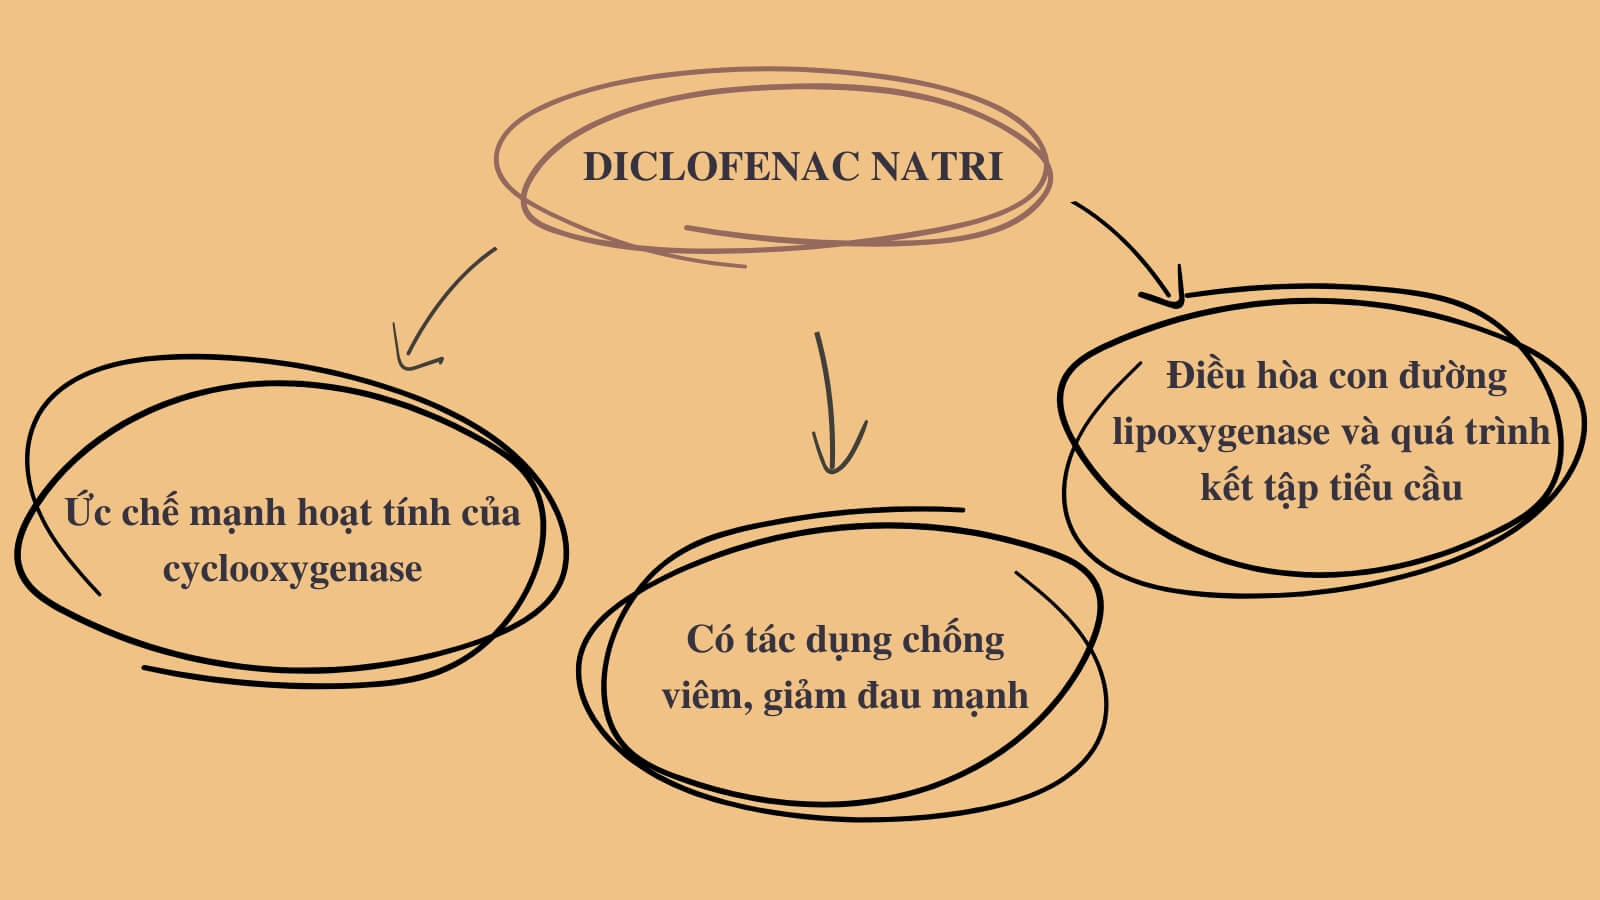 Diclofenac natri có tác dụng giảm đau, chống viêm mạnh 